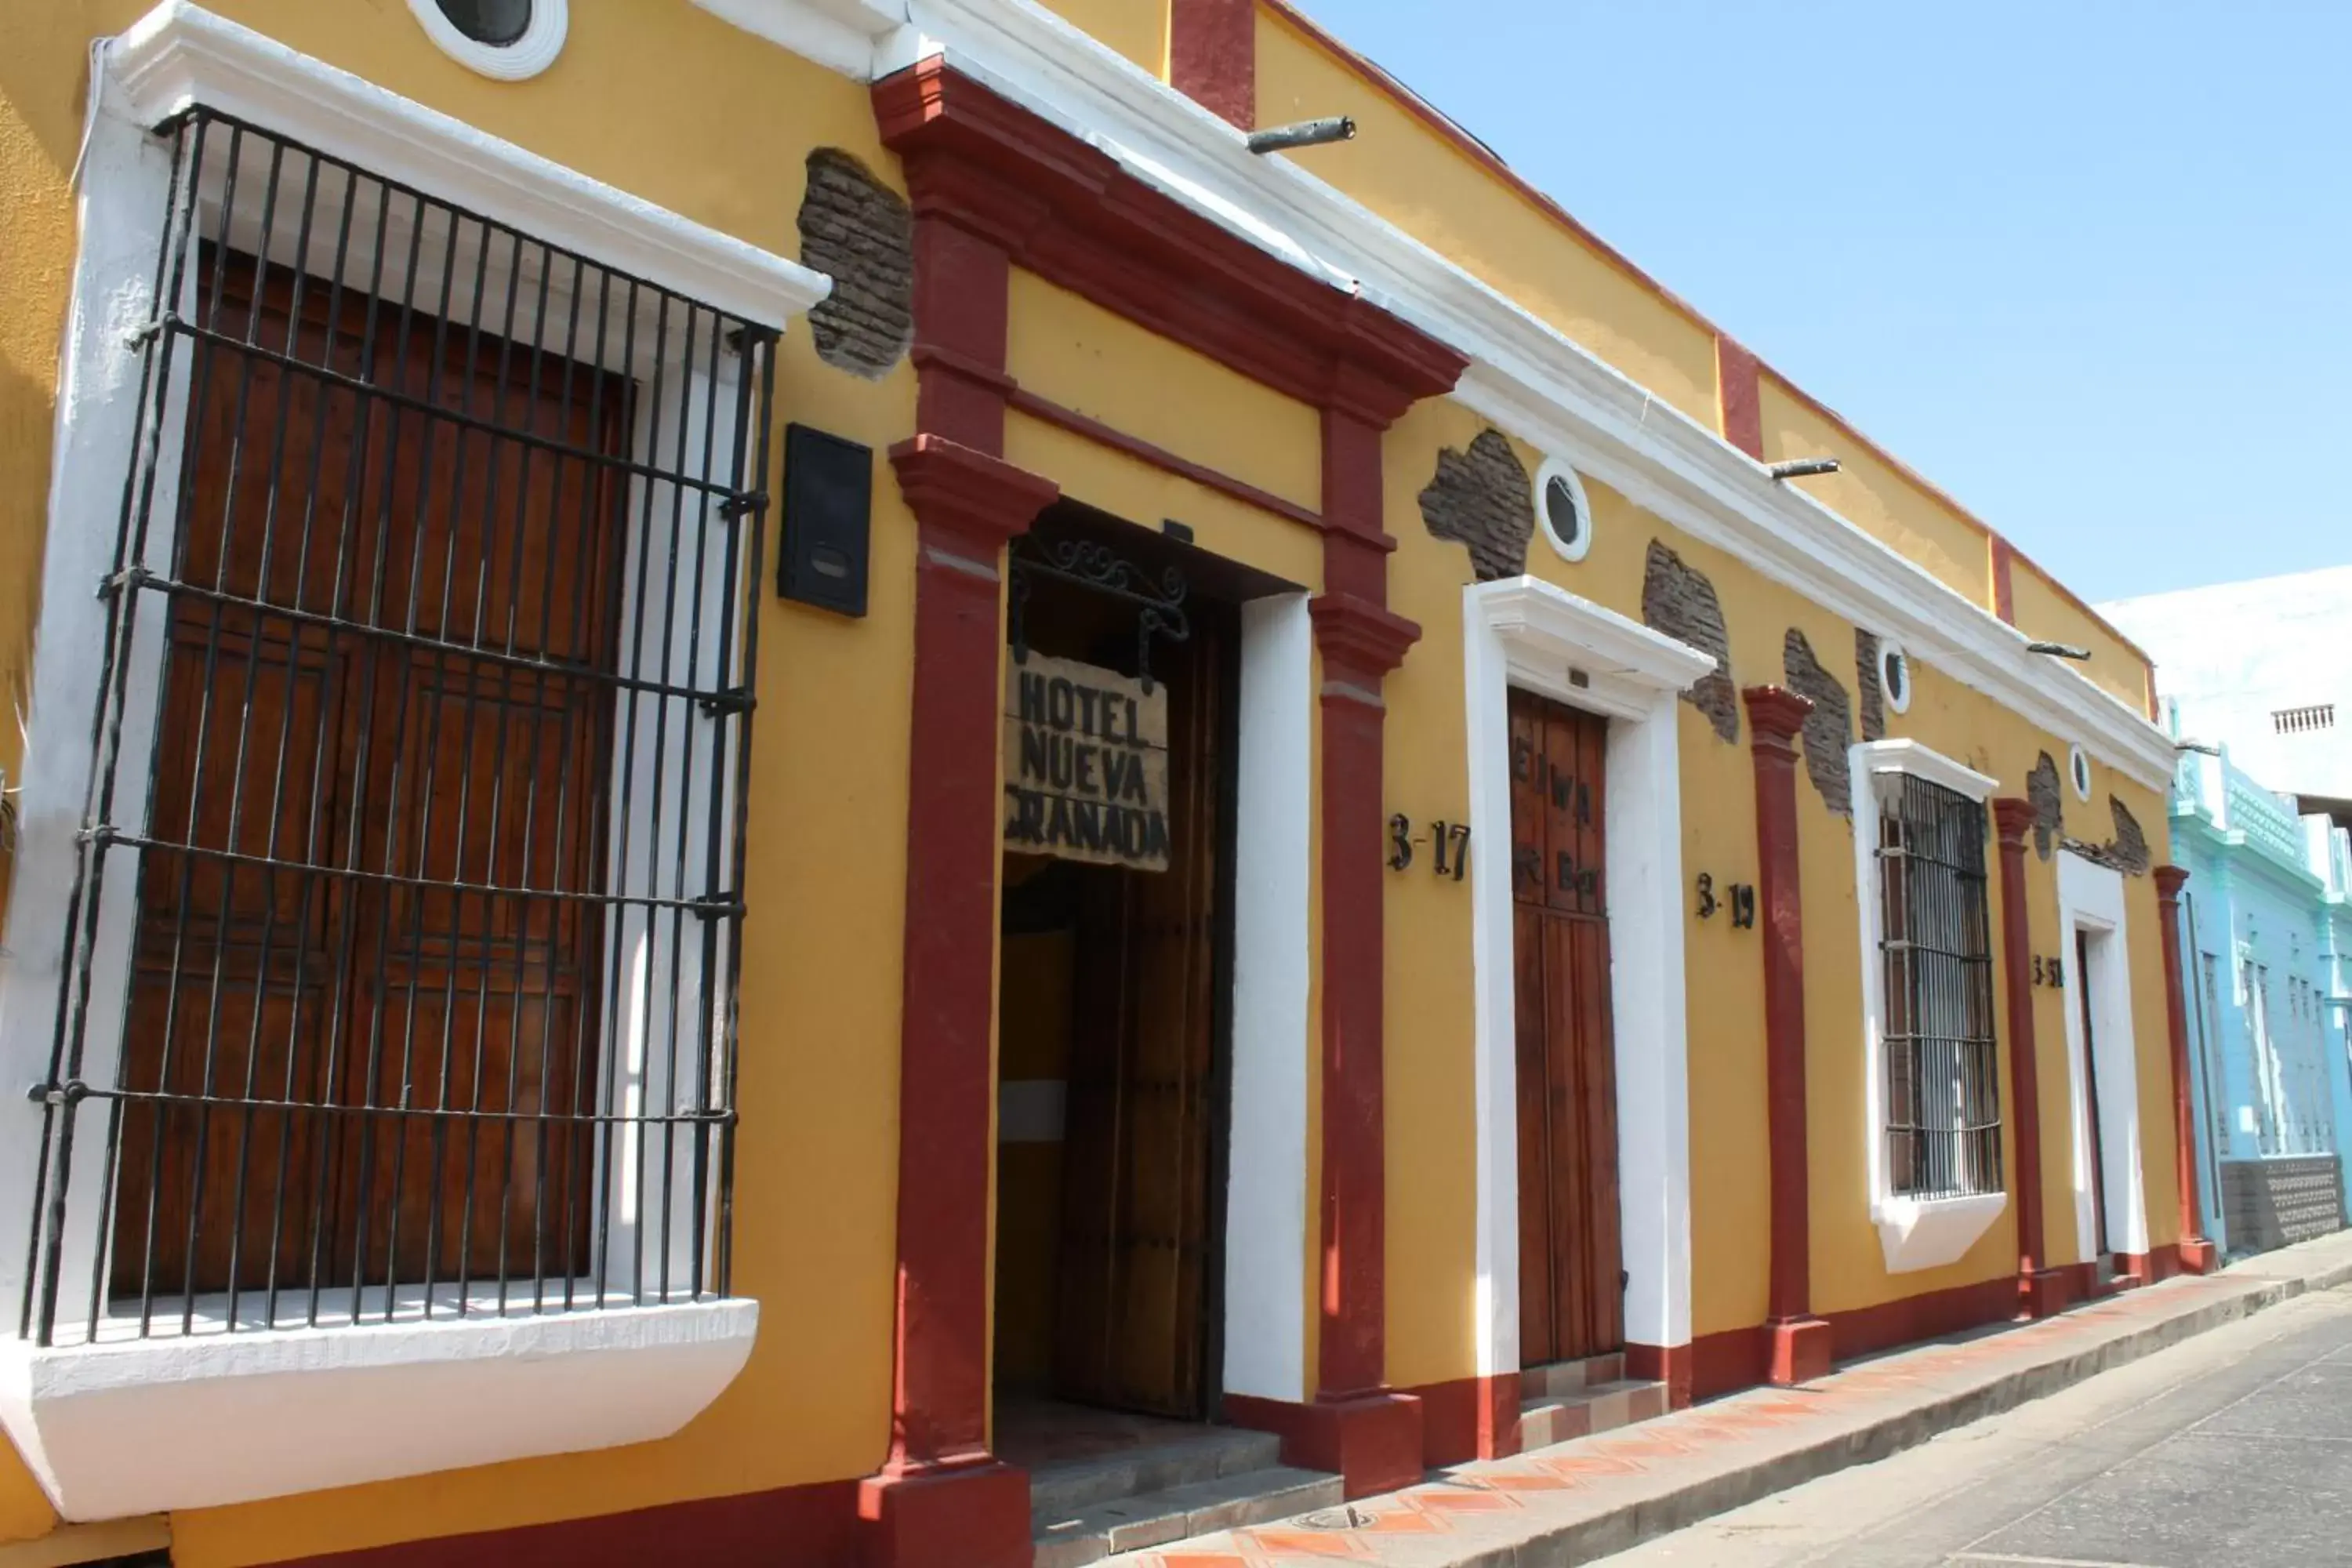 Property Building in Hotel Nueva Granada